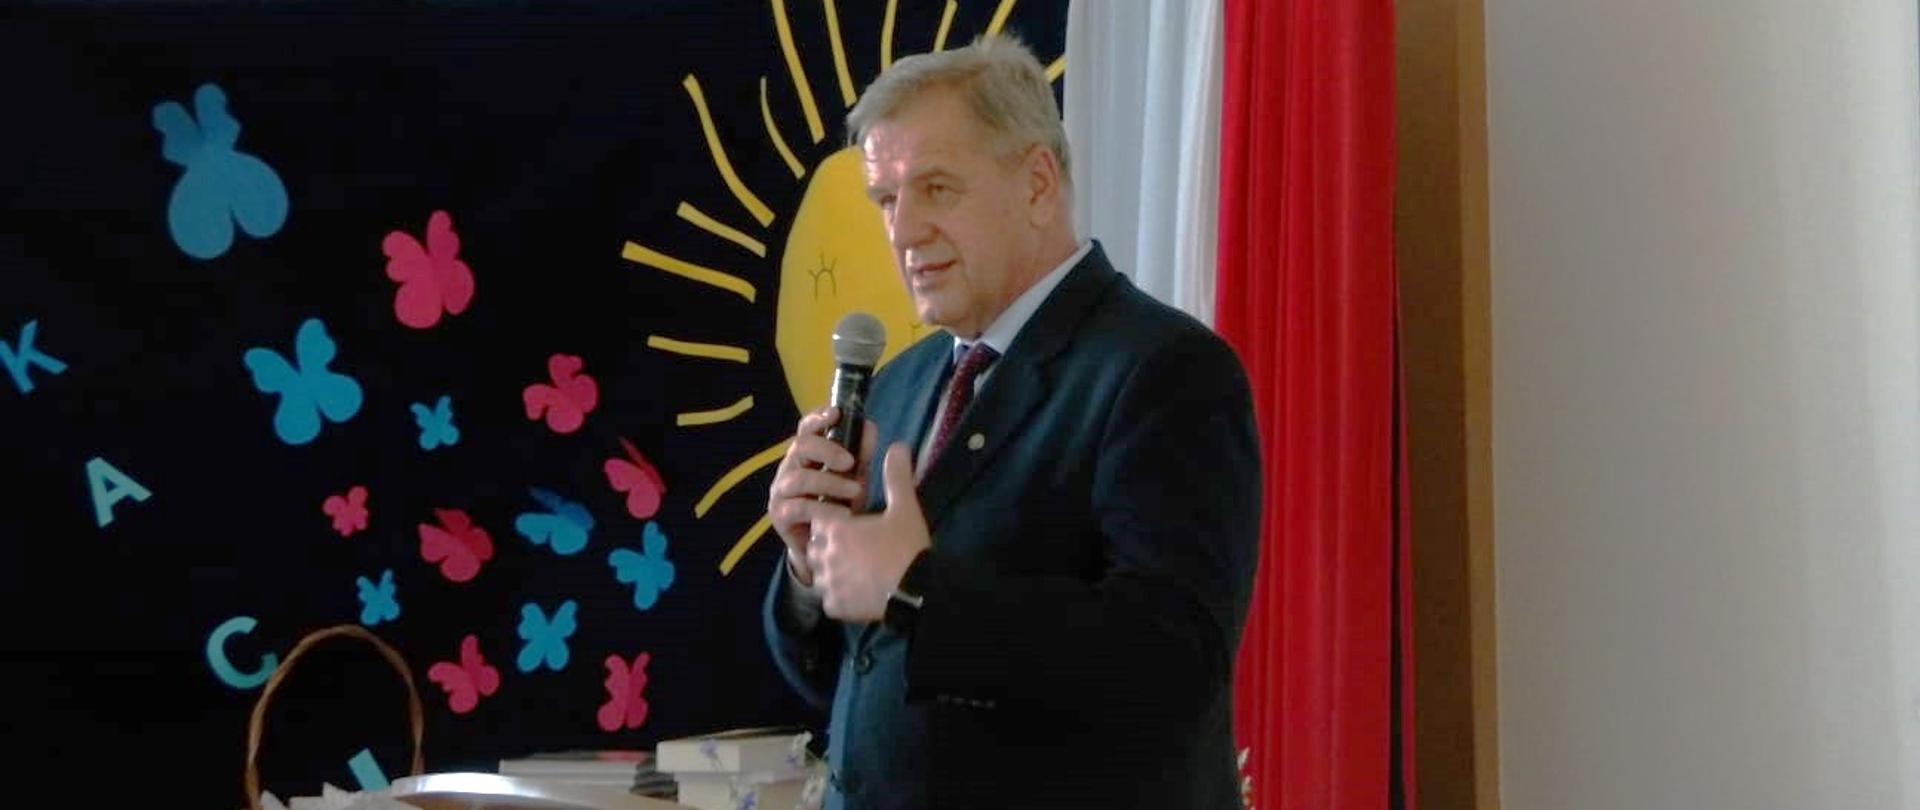 Starosta Sławomir Jerzy Snarski przemawia w Zespole Szkół nr 4 podczas akademii kończącej rok szkolny